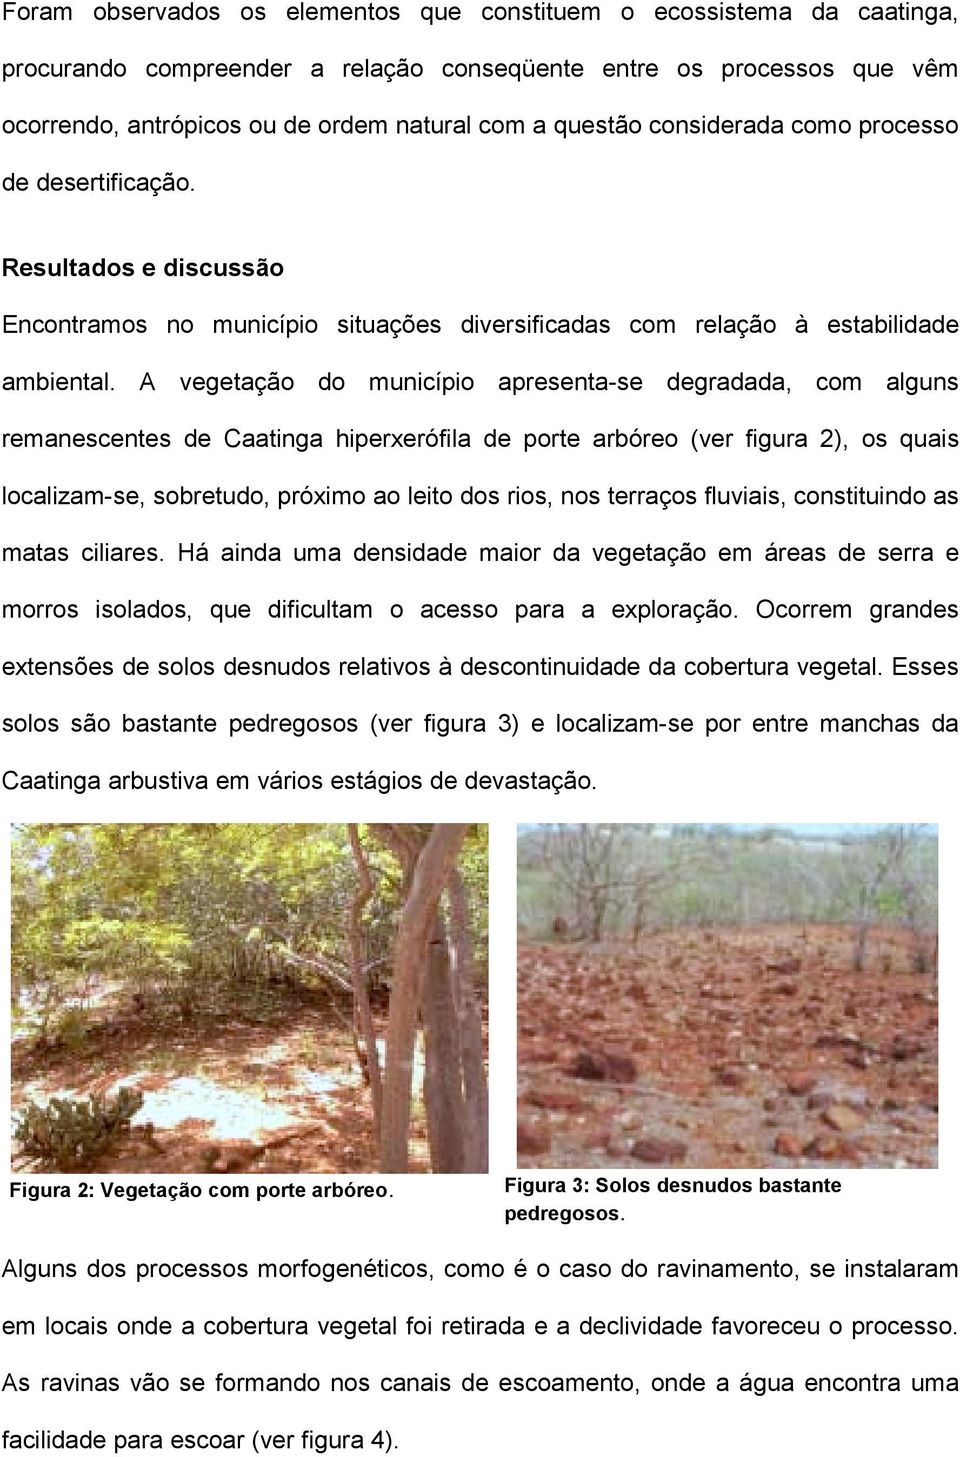 A vegetação do município apresenta-se degradada, com alguns remanescentes de Caatinga hiperxerófila de porte arbóreo (ver figura 2), os quais localizam-se, sobretudo, próximo ao leito dos rios, nos